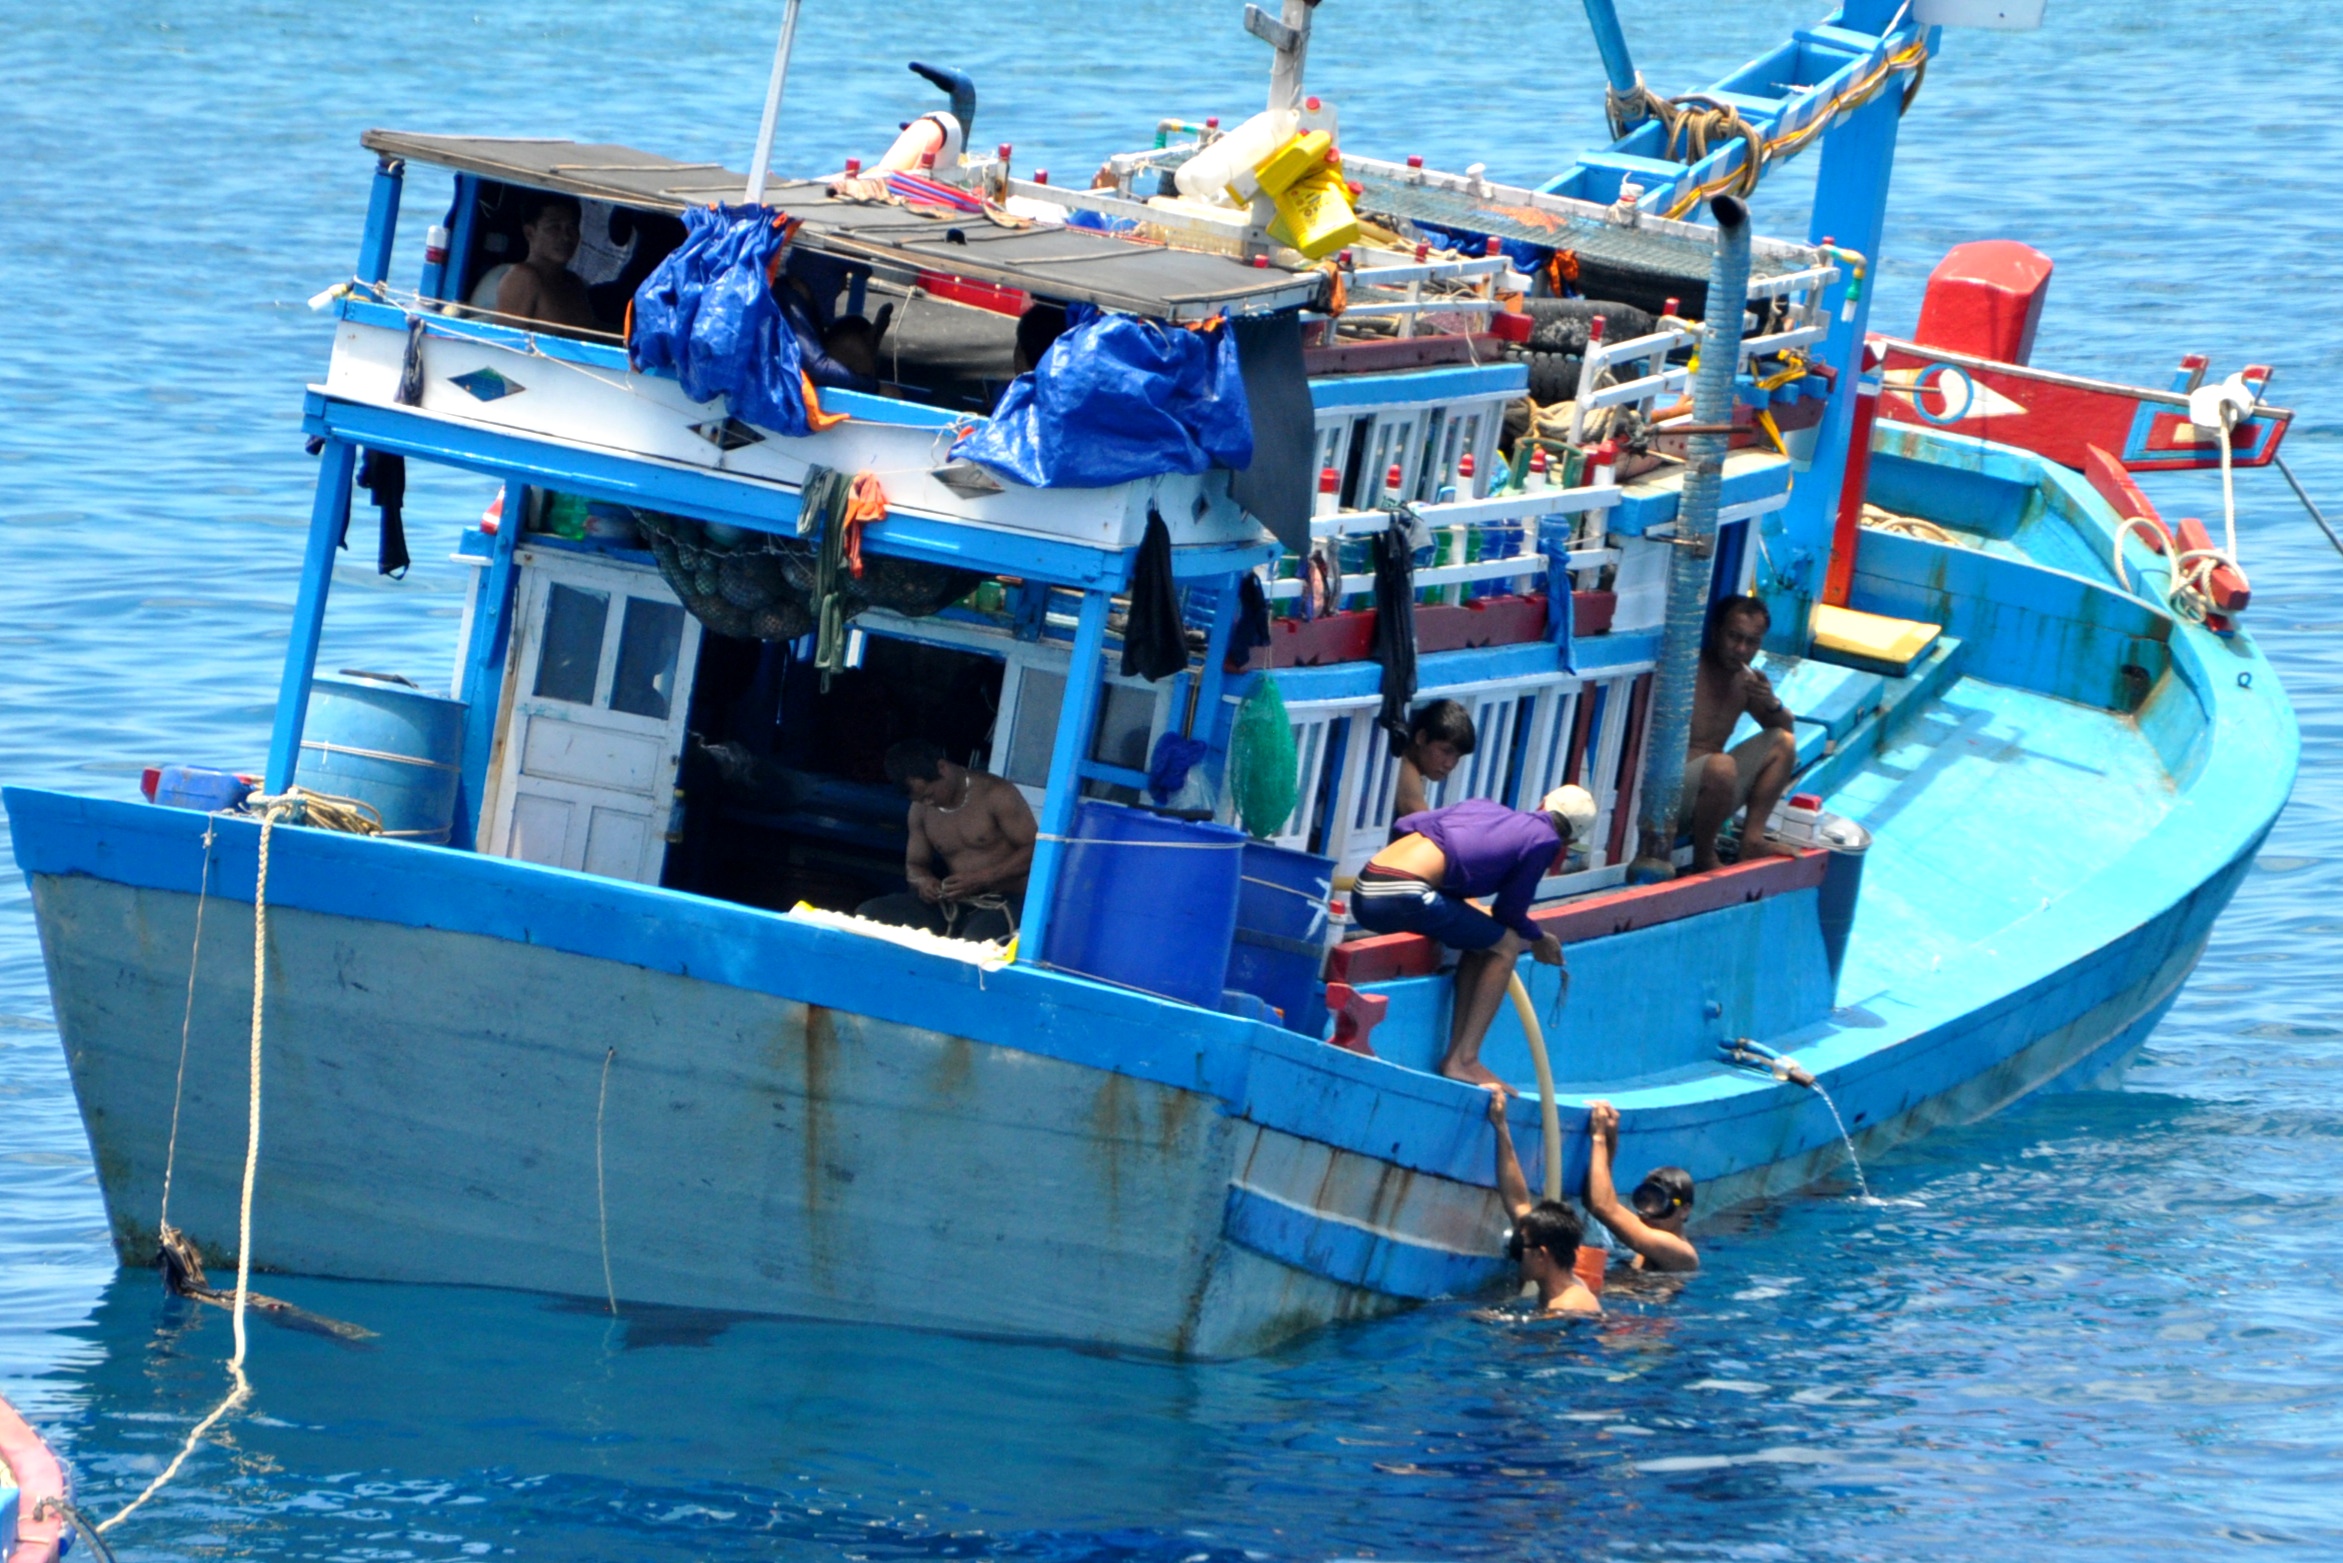 Tàu cá của ngư dân Việt Nam đang hành nghề lặn bắt thủy sản tại vùng biển Trường Sa - Ảnh: Mai Thanh Hải